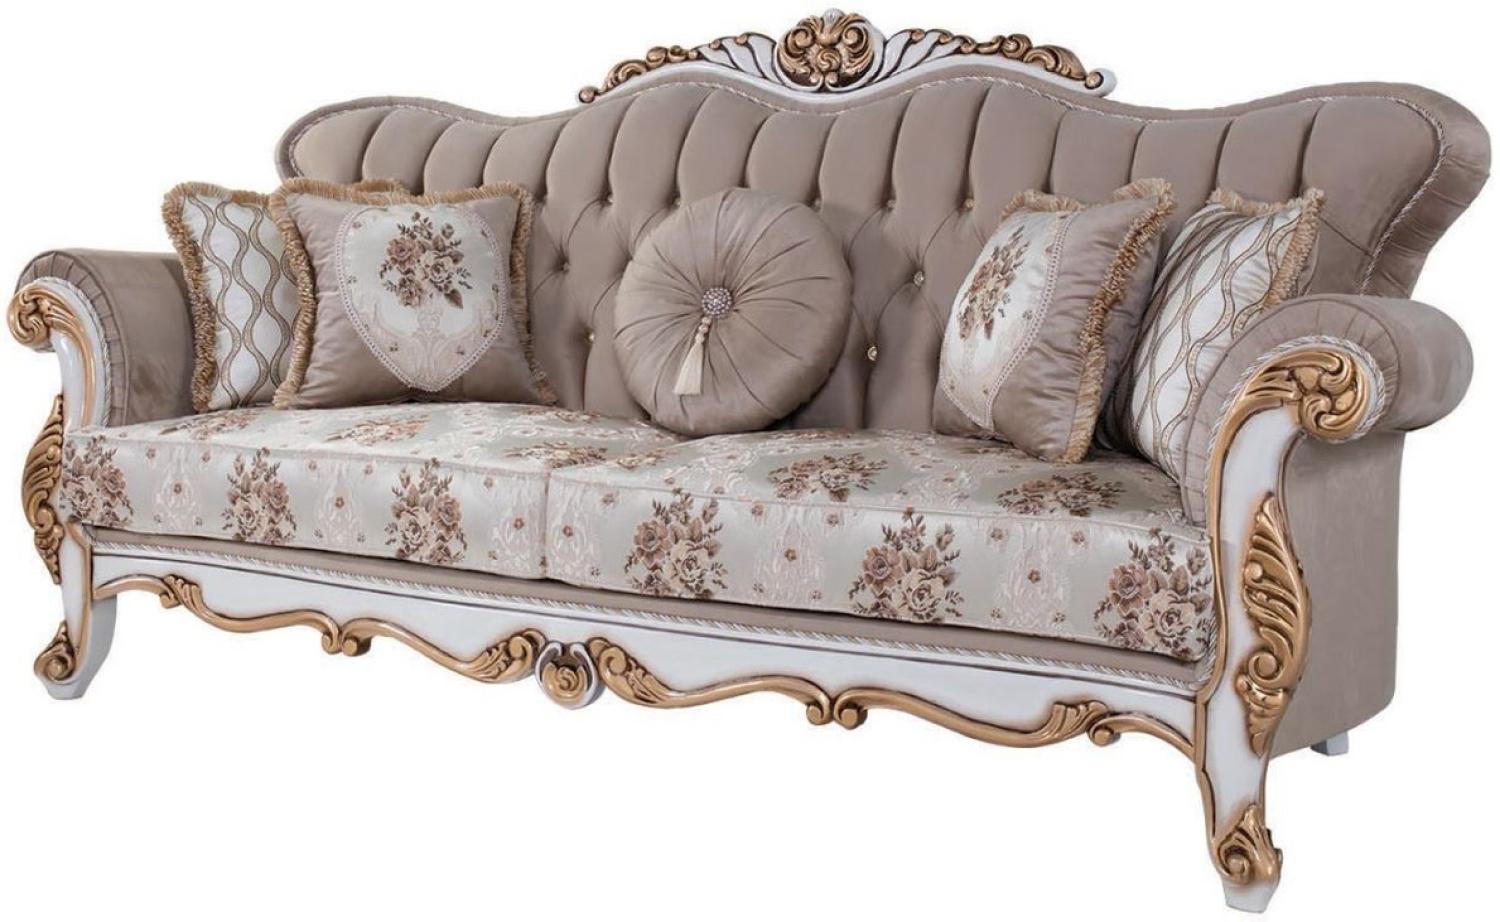 Casa Padrino Luxus Barock Sofa mit Kissen Grau / Mehrfarbig / Weiß / Bronze 232 x 87 x H. 101 cm - Wohnzimmer Couch mit Blumenmuster und wunderschönen Verzierungen Bild 1